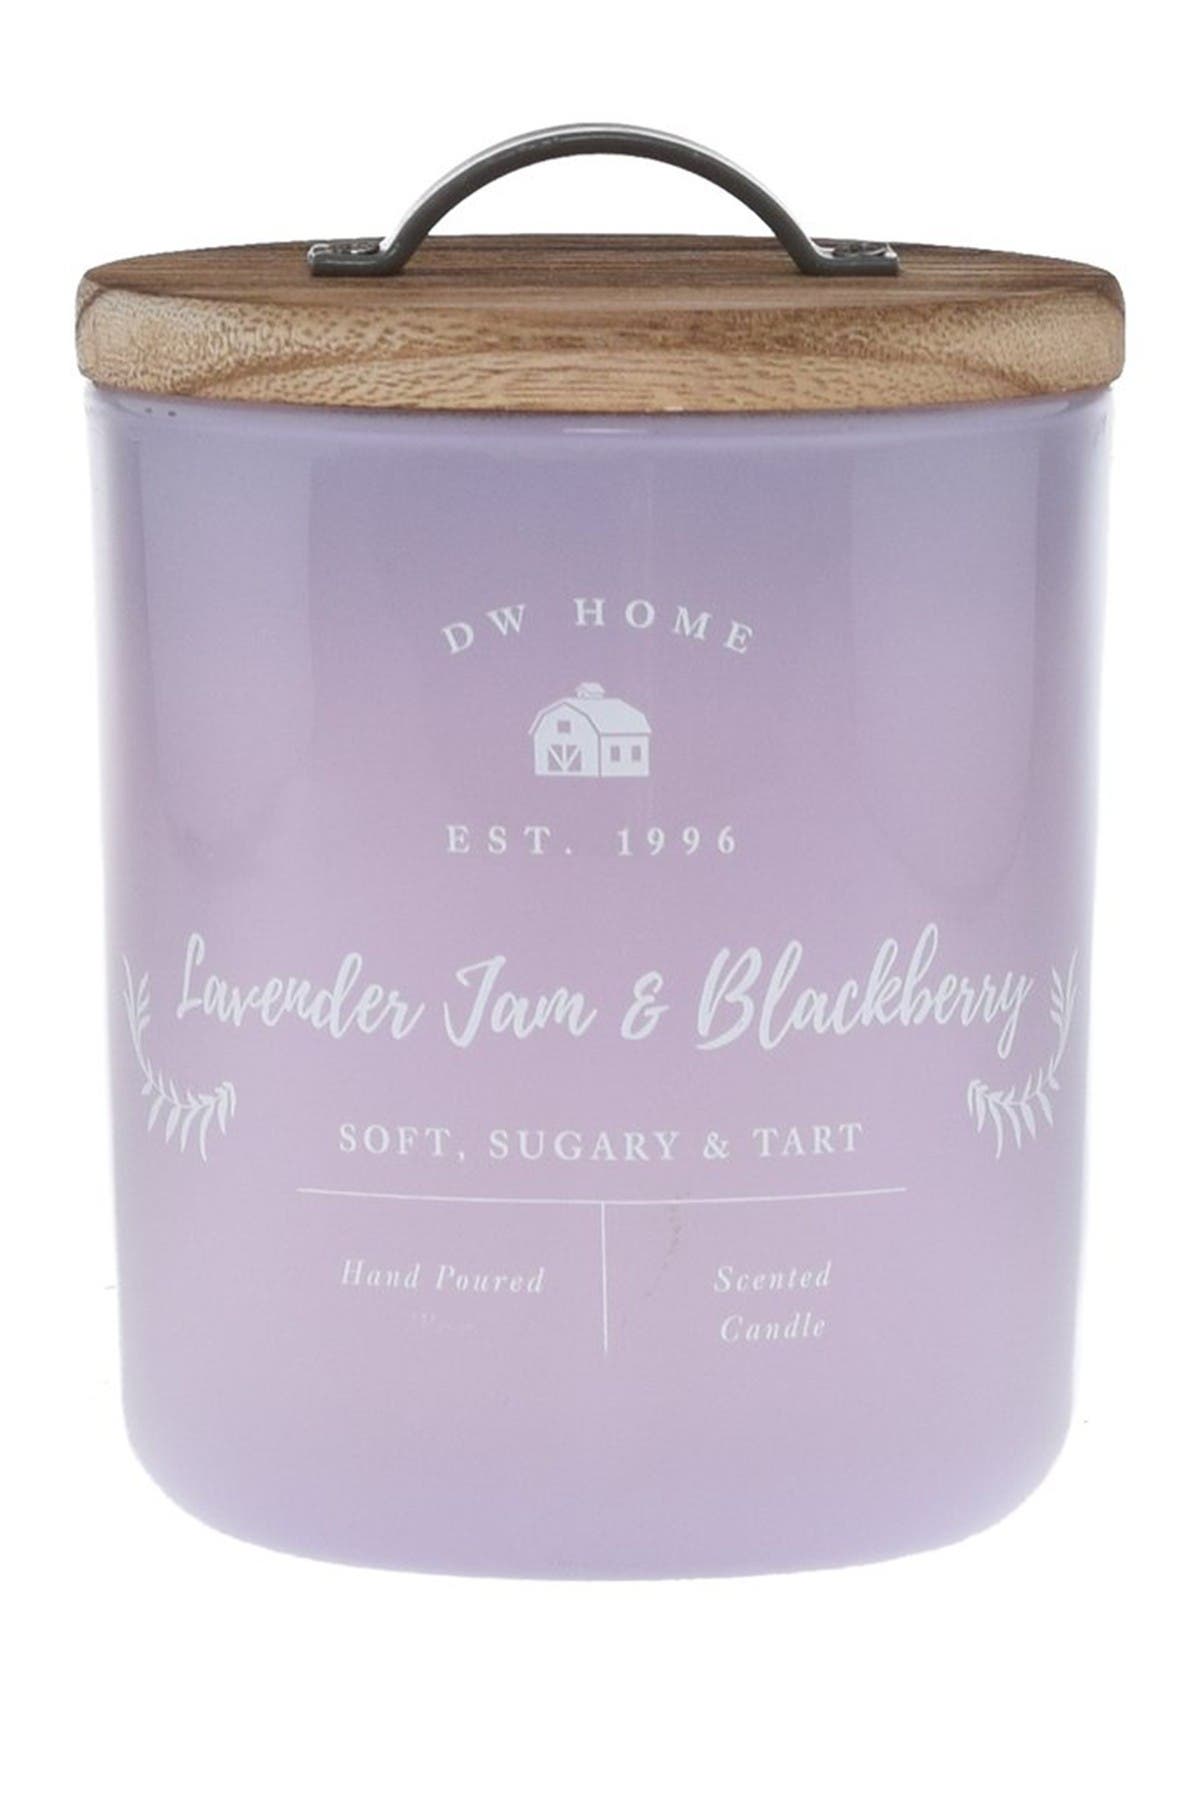 Dw Home Farmhouse Lavender Jam & Blackberry Candle